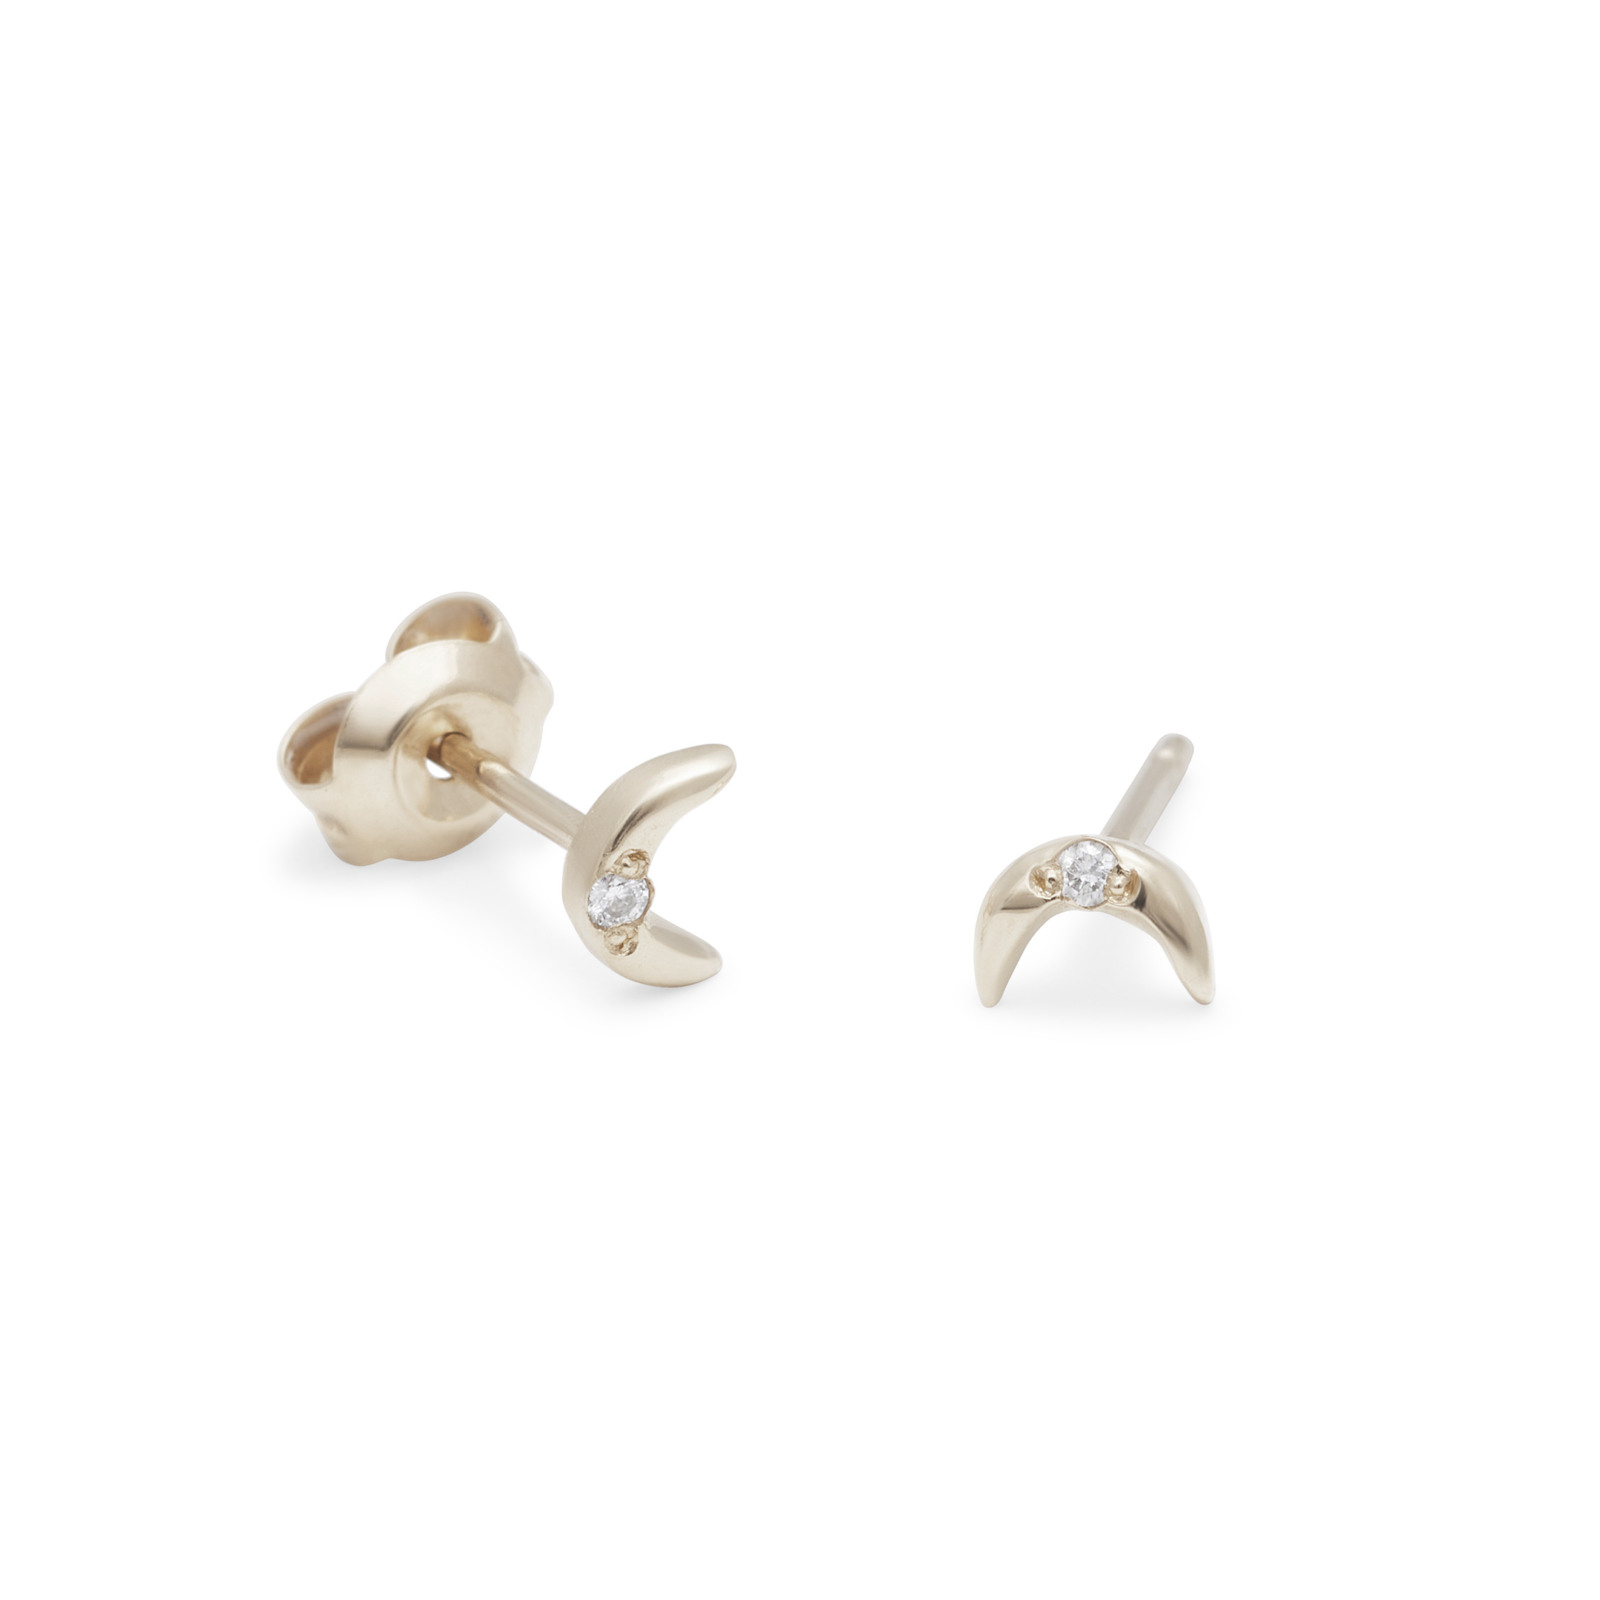 teeny tiny moon stud earrings 14k white gold